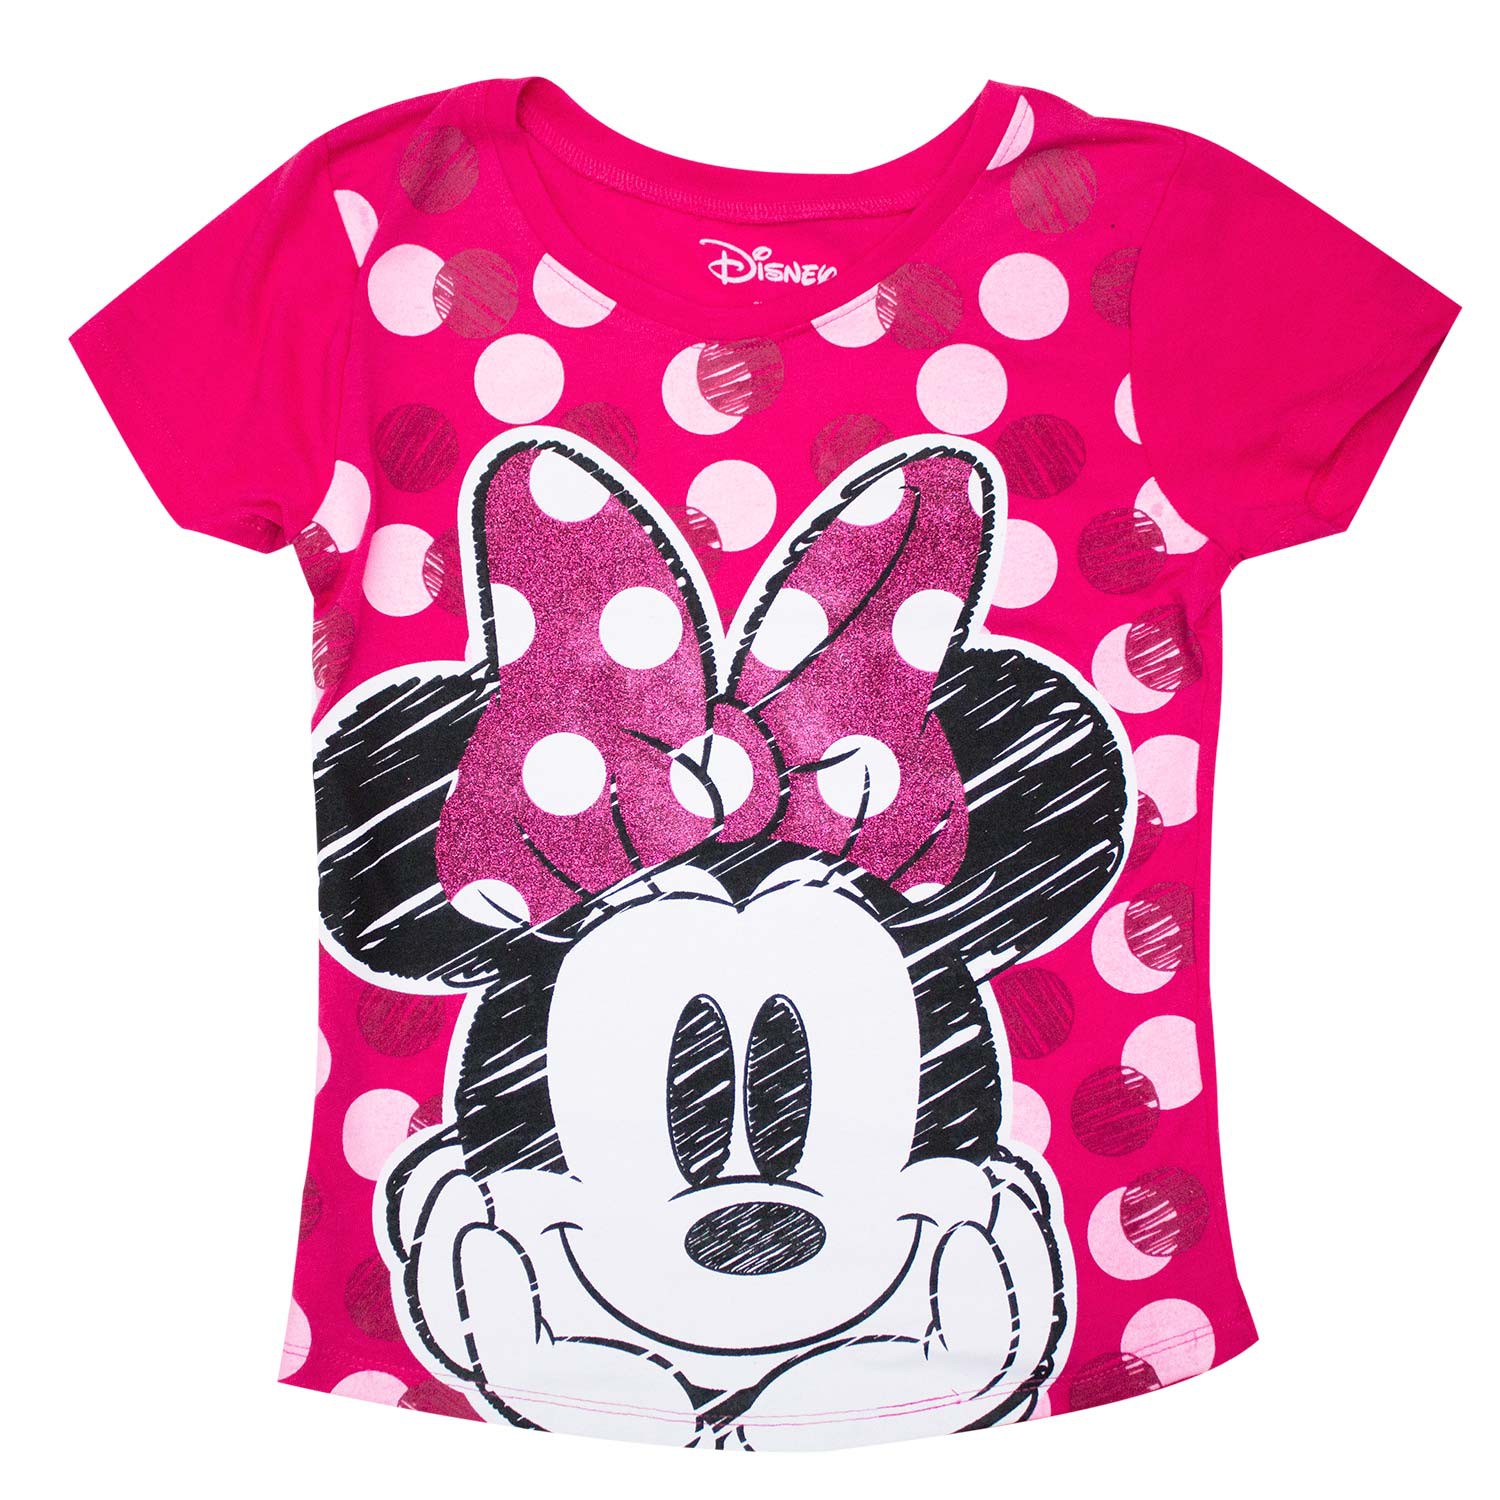 Details about   Disney Minnie Mouse Pinky Men Women Unisex T-shirt Vest Top 4145 